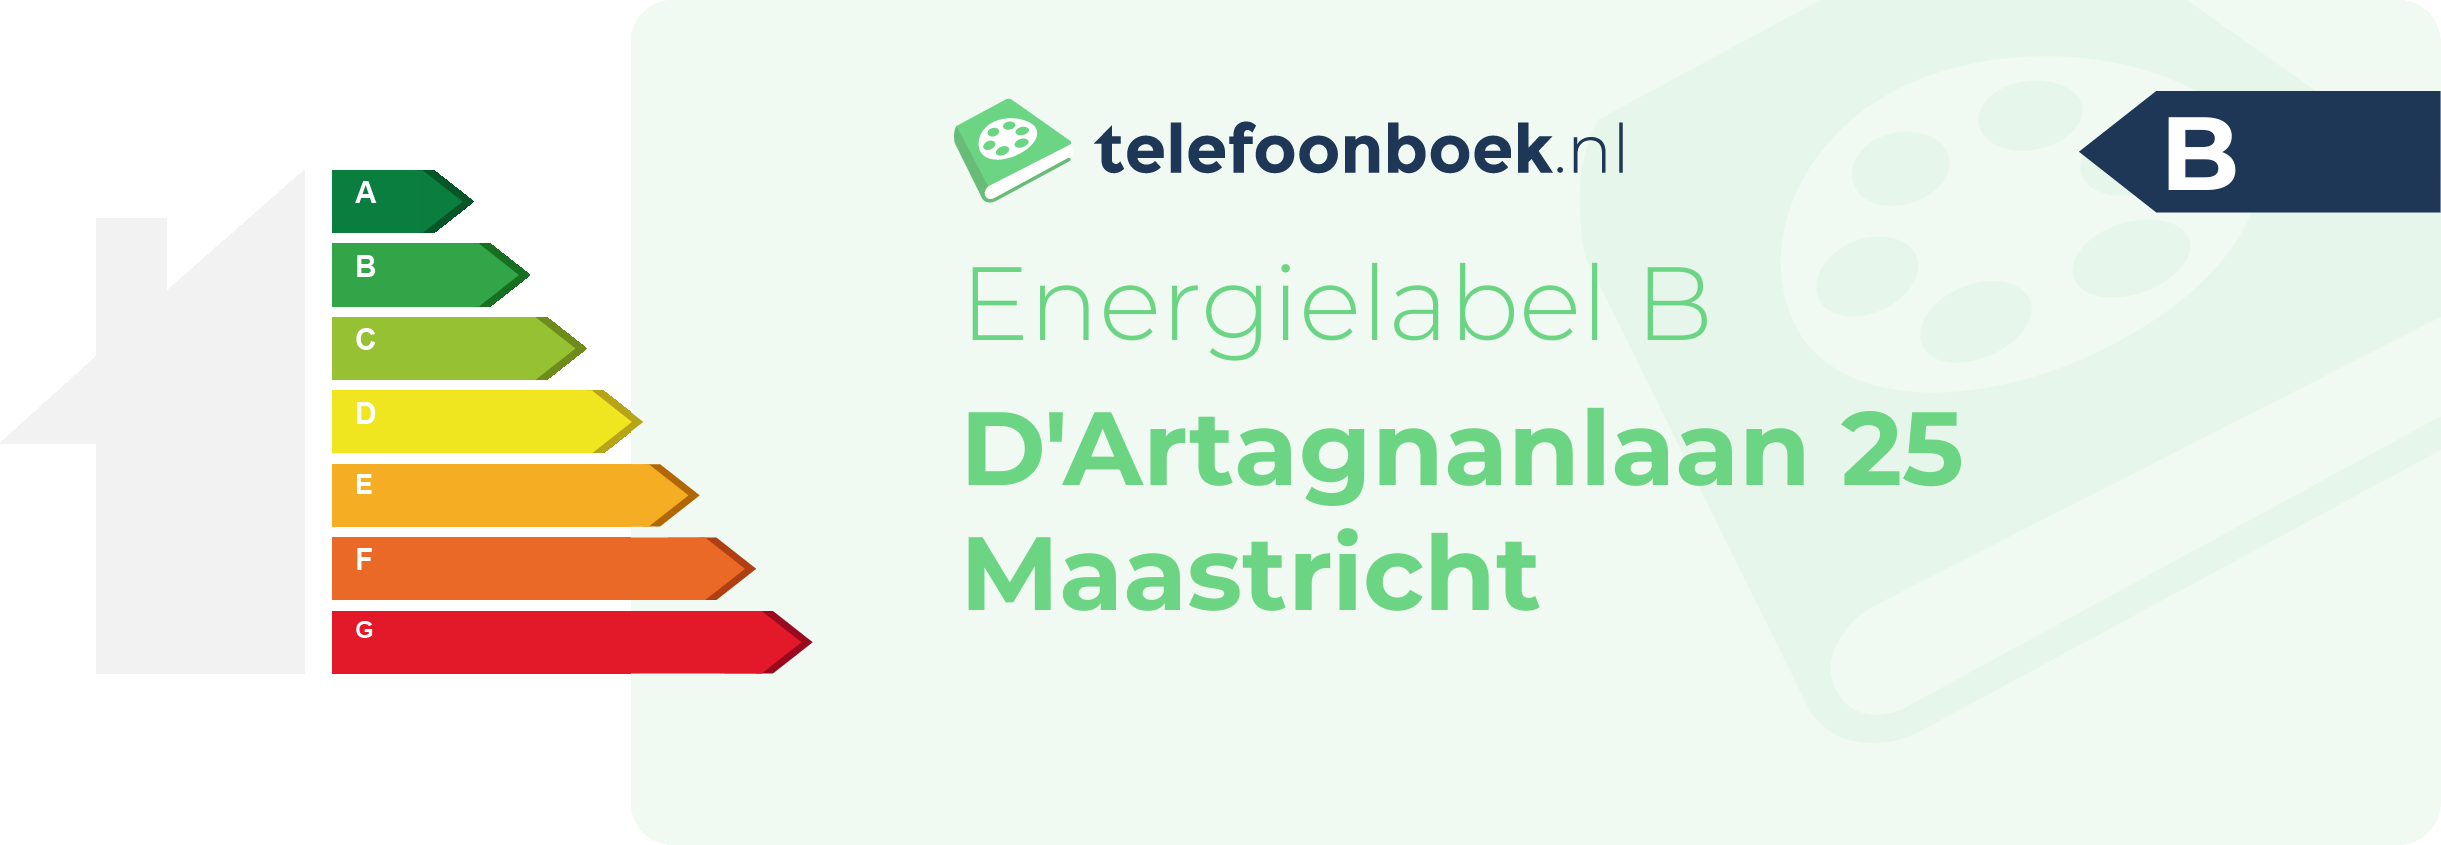 Energielabel D'Artagnanlaan 25 Maastricht